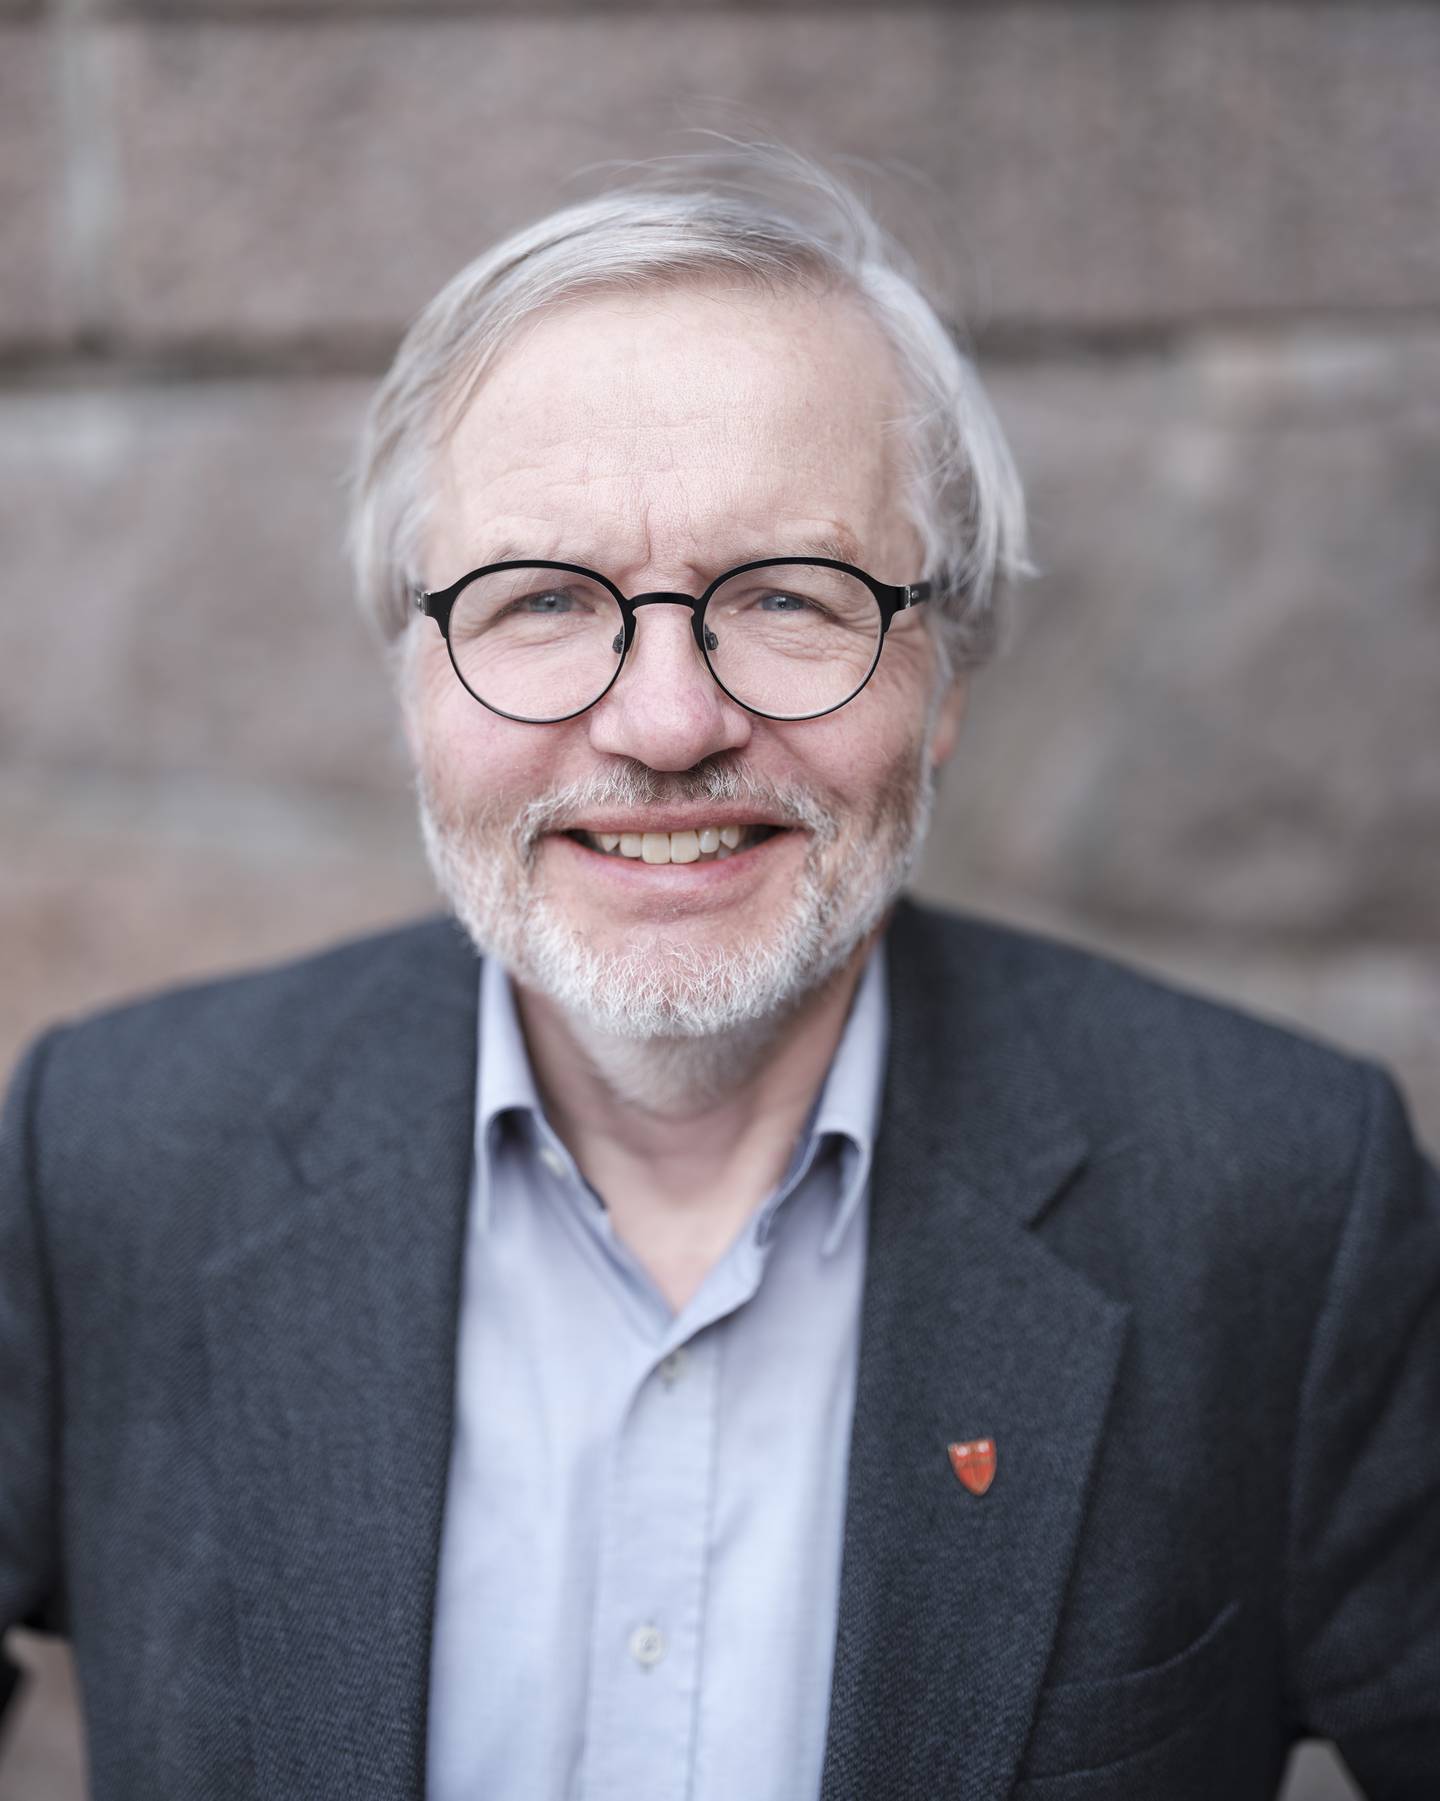 Harald Hegstad er nominert til å bli leder av Kirkerådet. Den norske kirke.